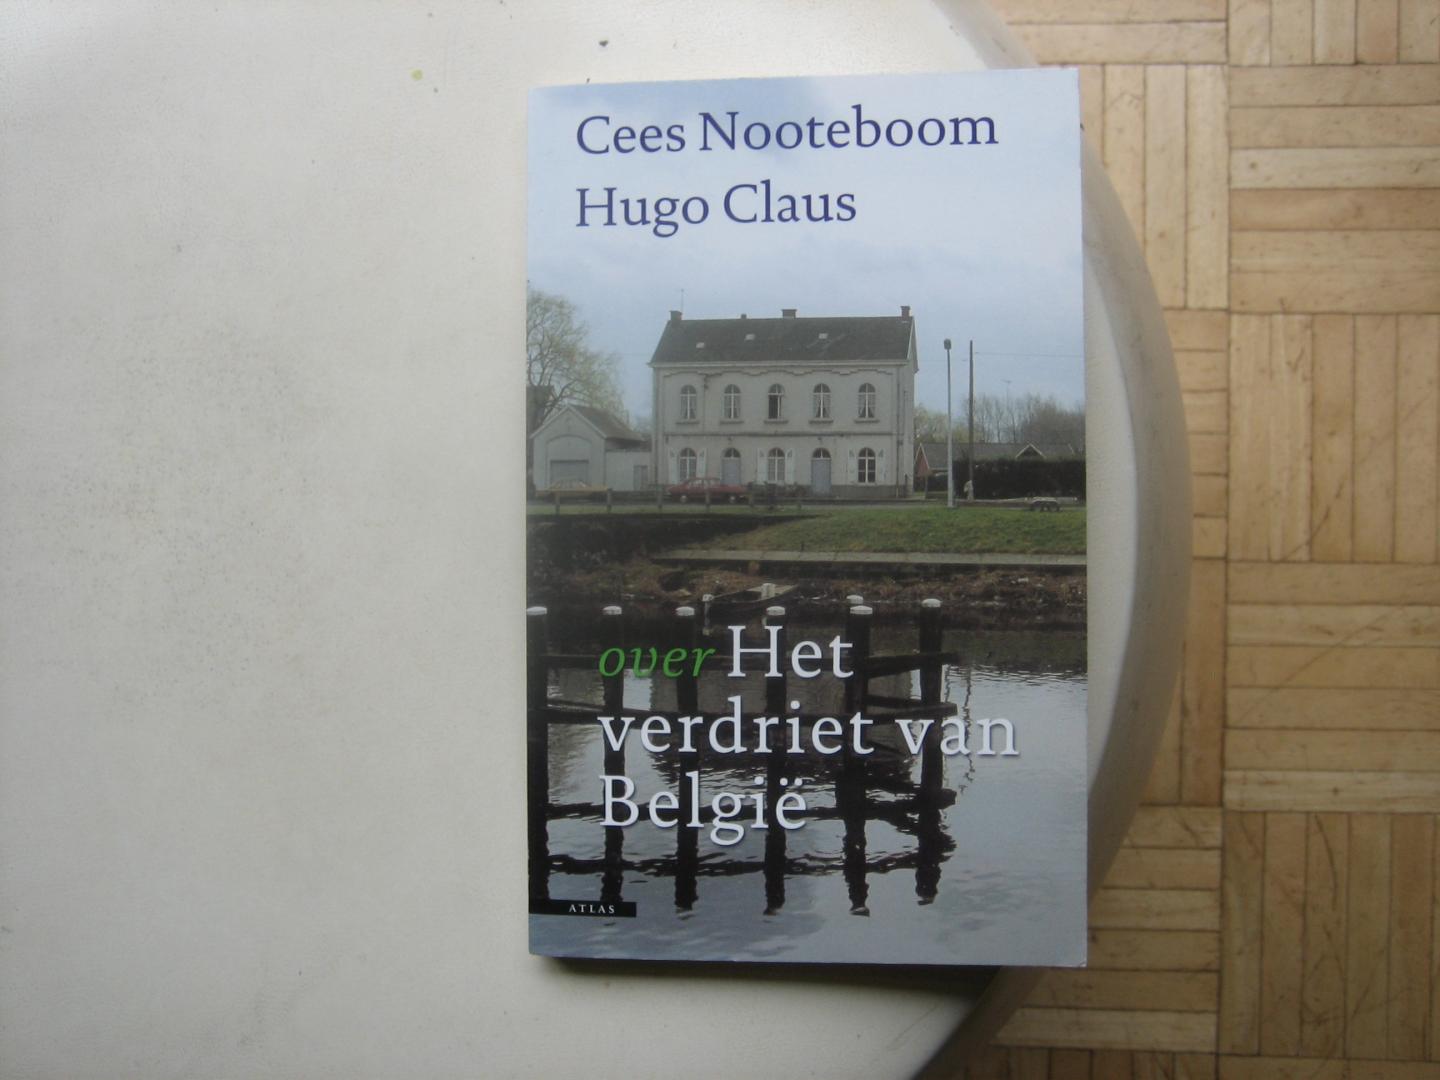 Cees Nooteboom & Hugo Claus - Over Het verdriet van België ( Marathongesprek )